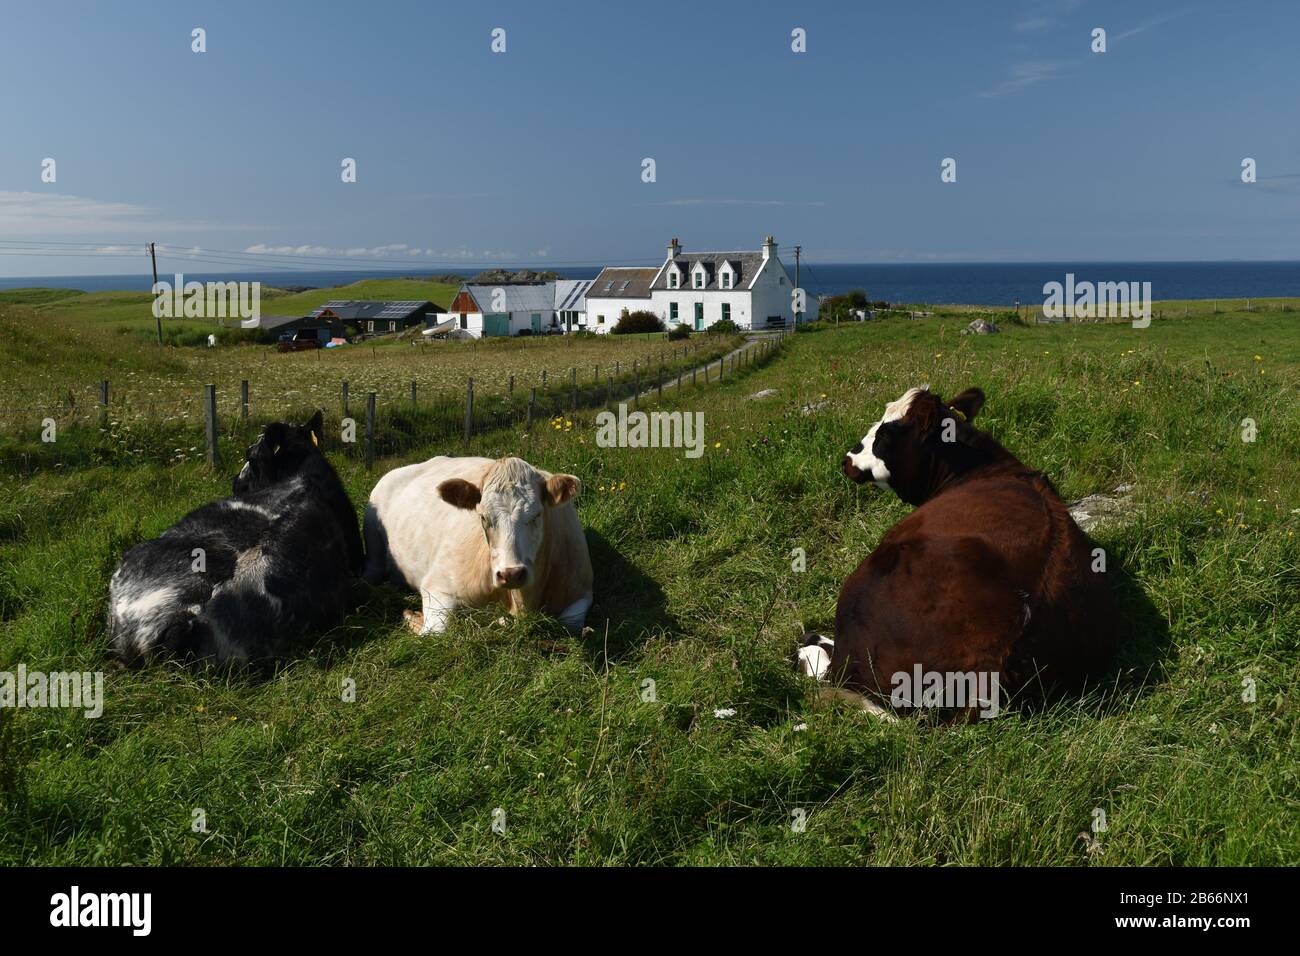 Vaches à mâcher la cud tout en se relaxant au soleil d'été sur Iona, Mull. Ecosse Banque D'Images